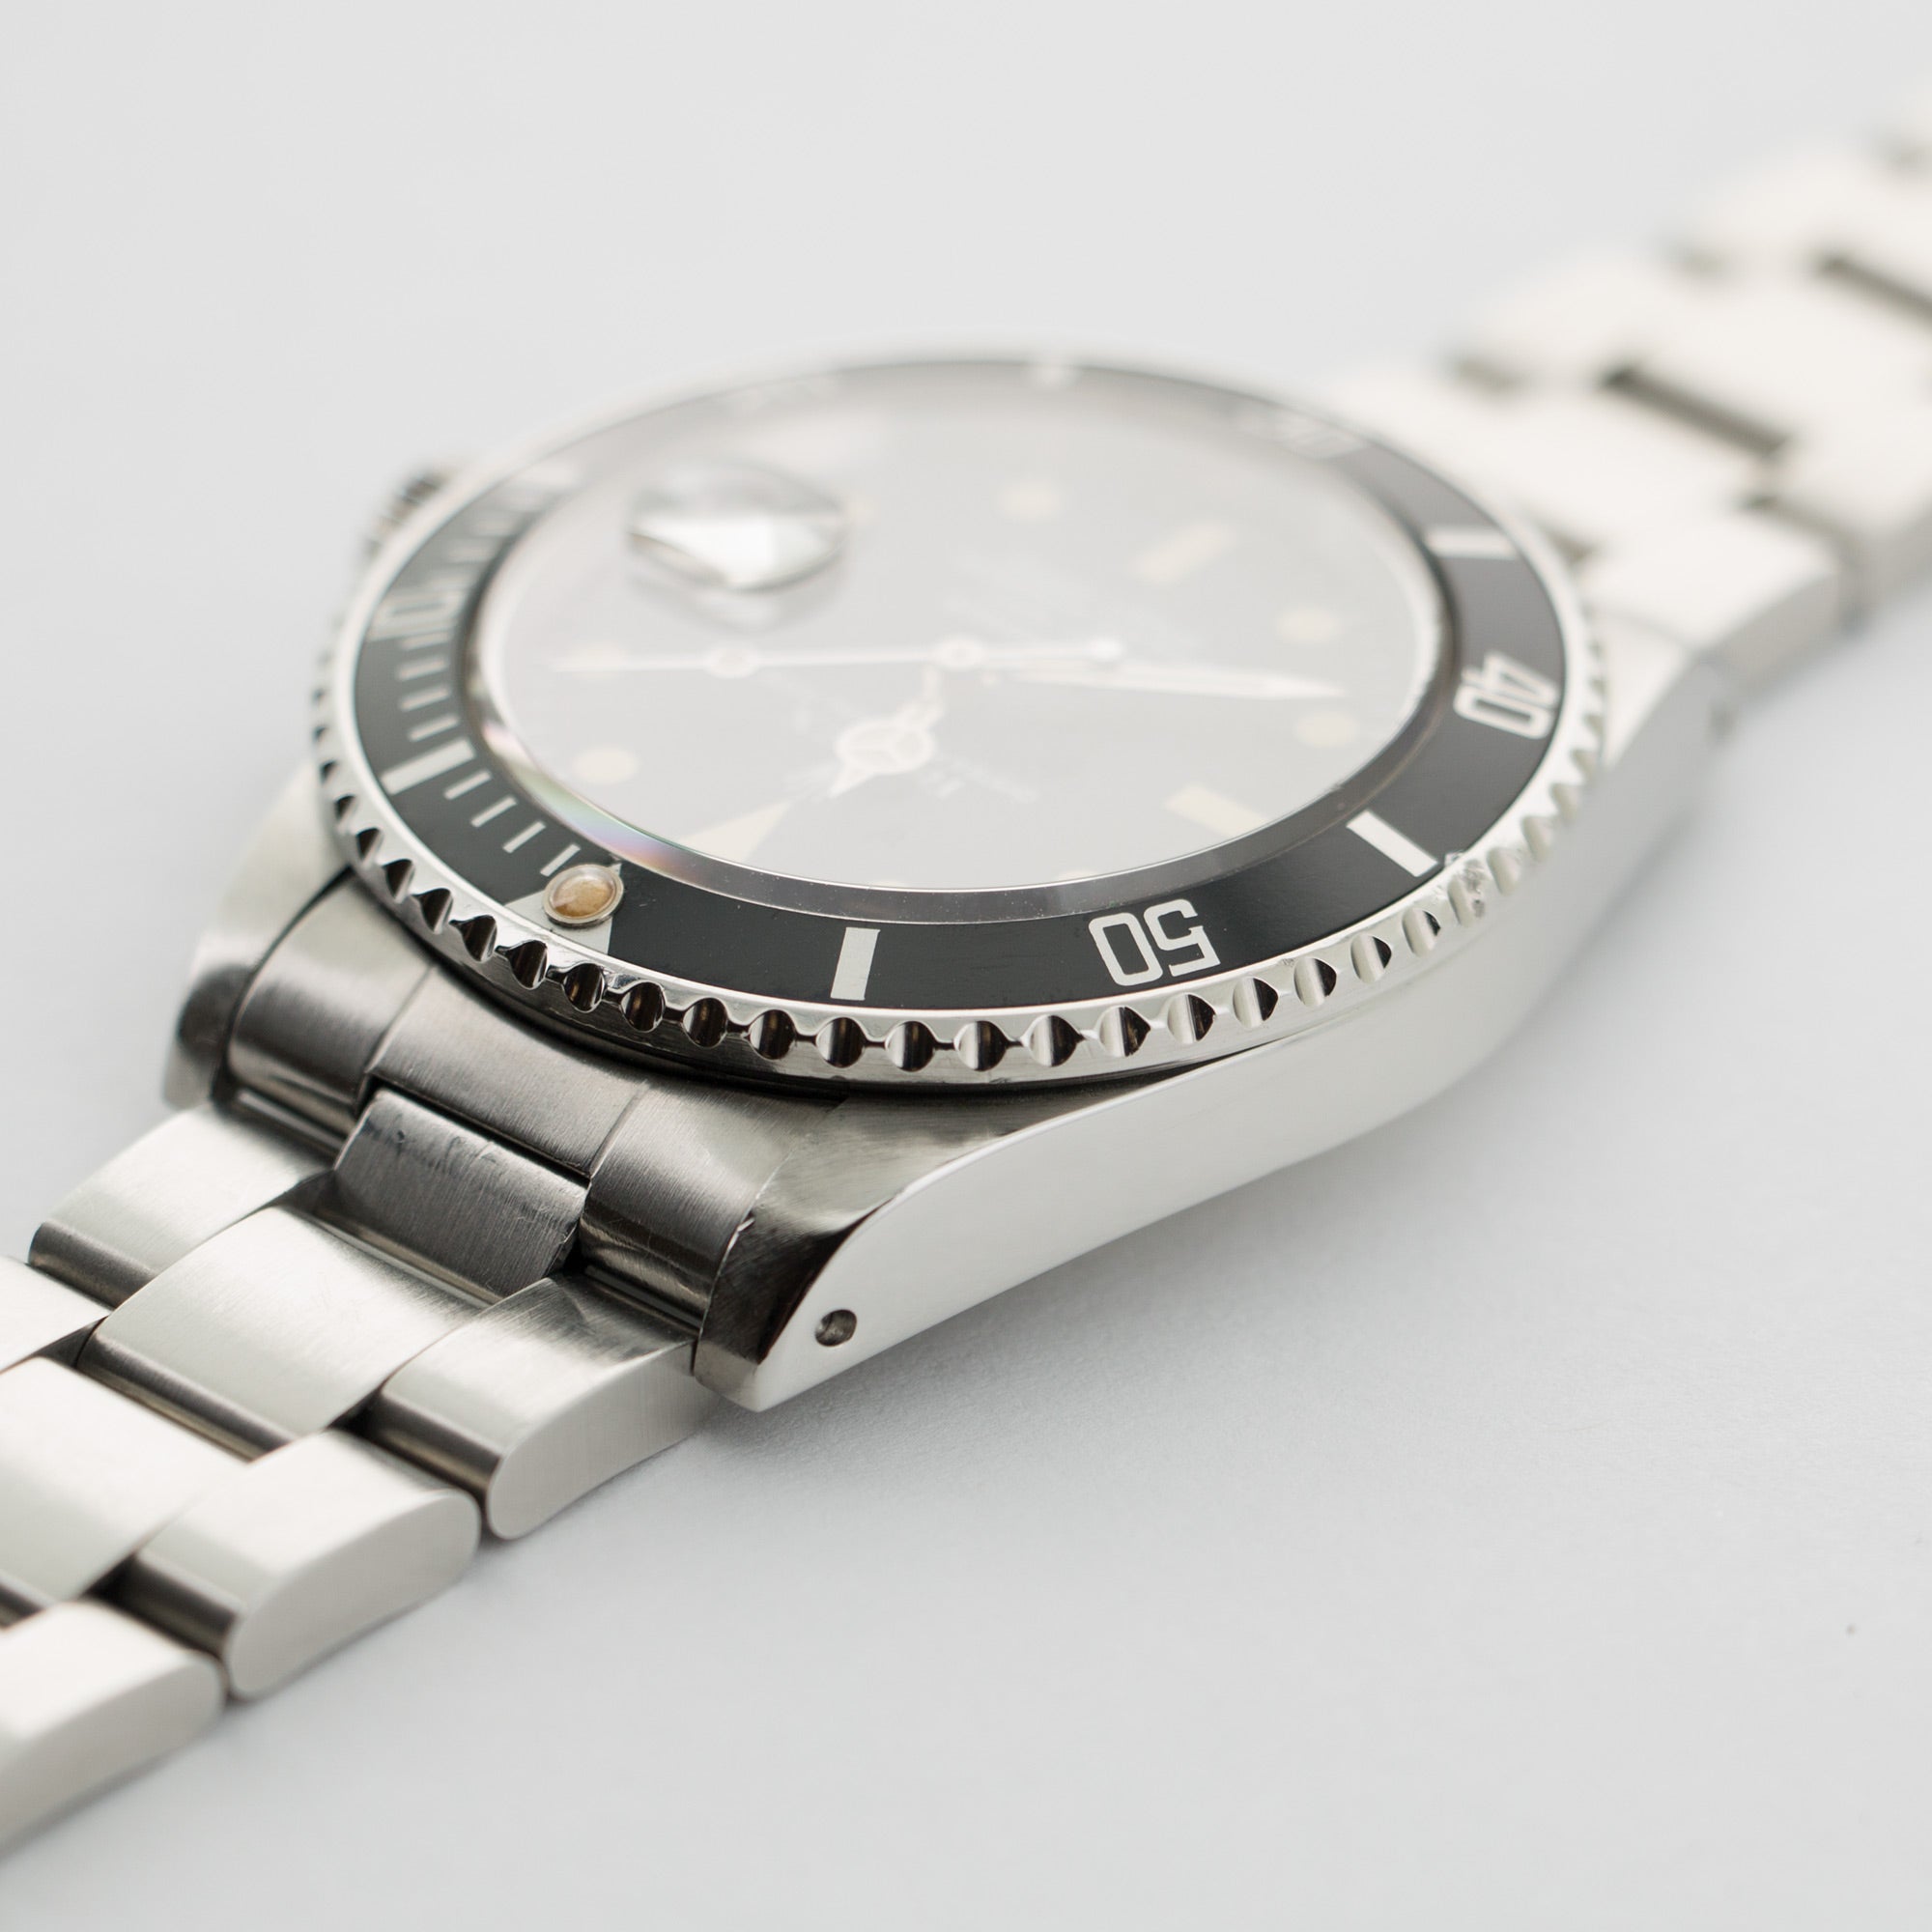 Rolex - Rolex Submariner Stainless Steel Ref. 16800 - The Keystone Watches